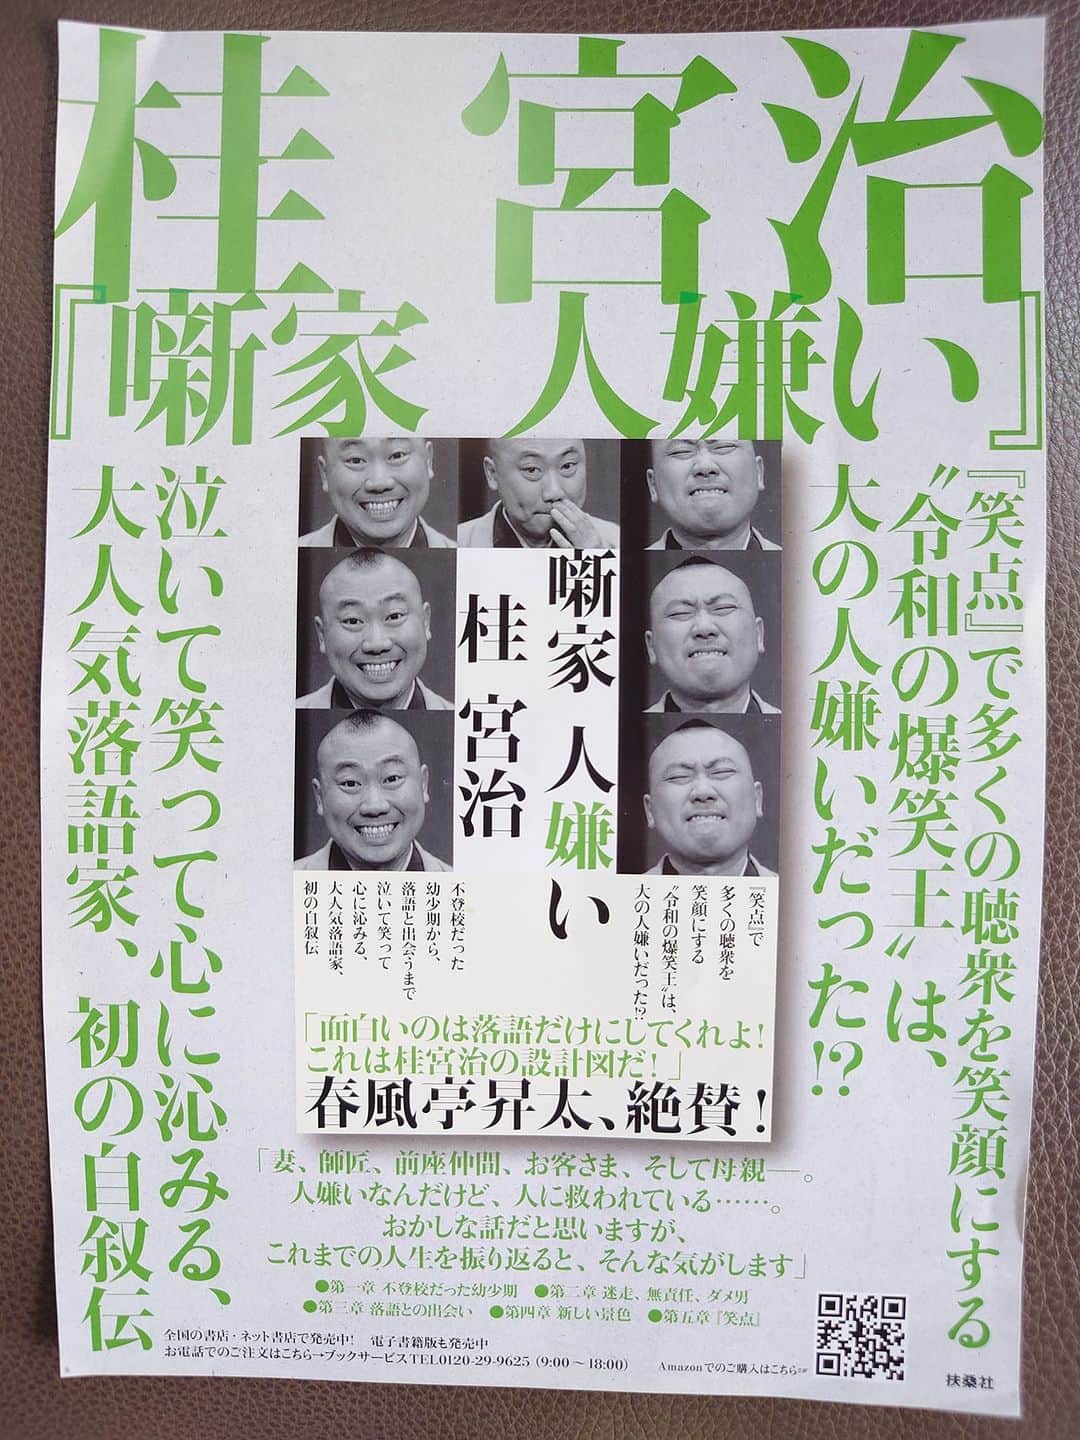 再×14入荷 落語チケット「林家たい平・桂宮治 二人会」香川県 - 通販